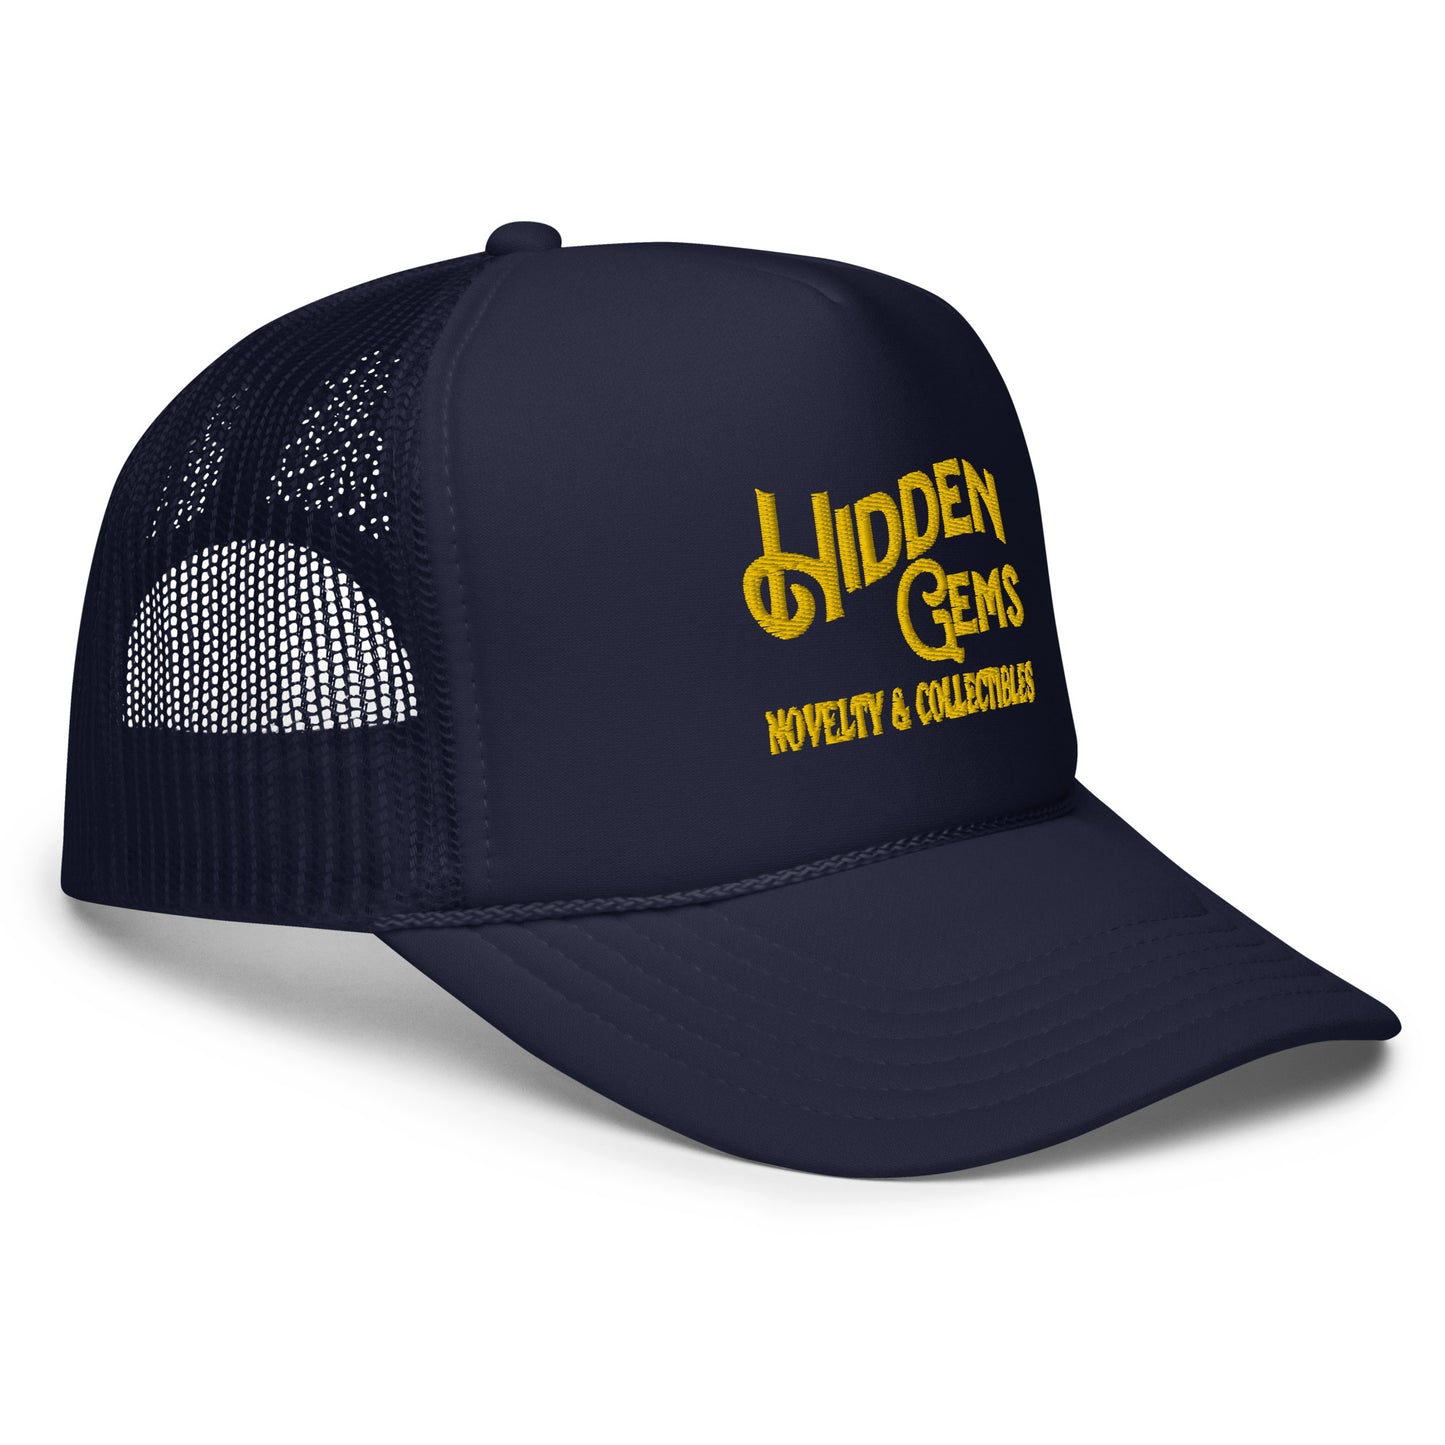 Hidden Gems Novelty & Collectibles Foam Trucker Hat